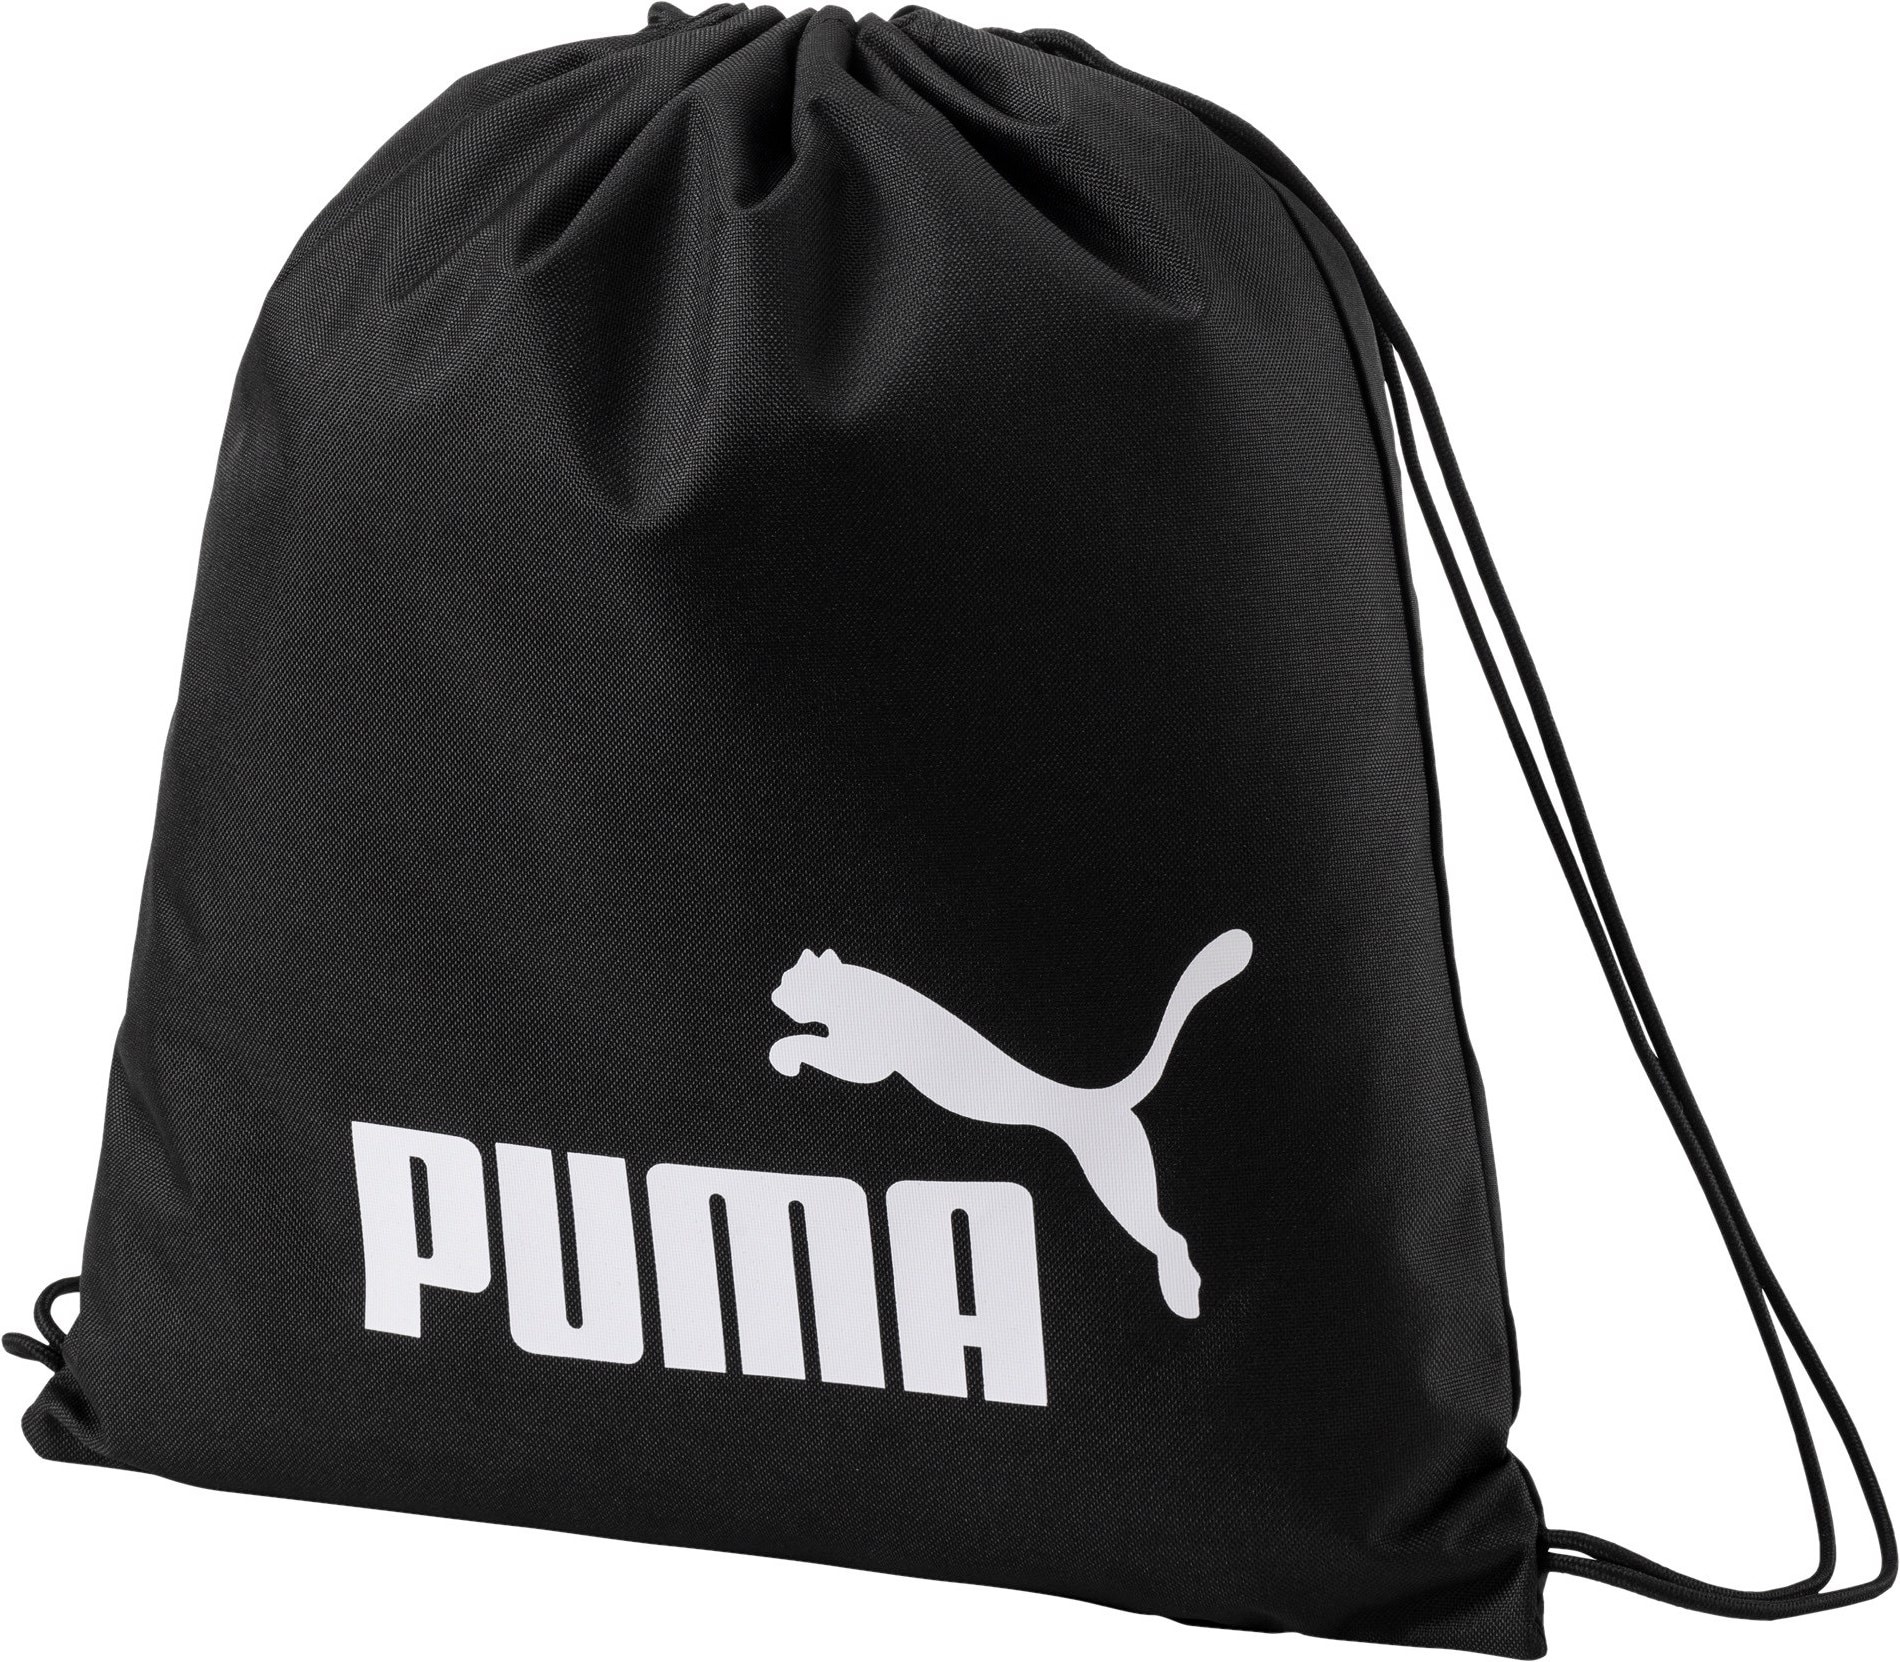 Puma, Tasche, Phase Gym Sack-074943, Schwarz